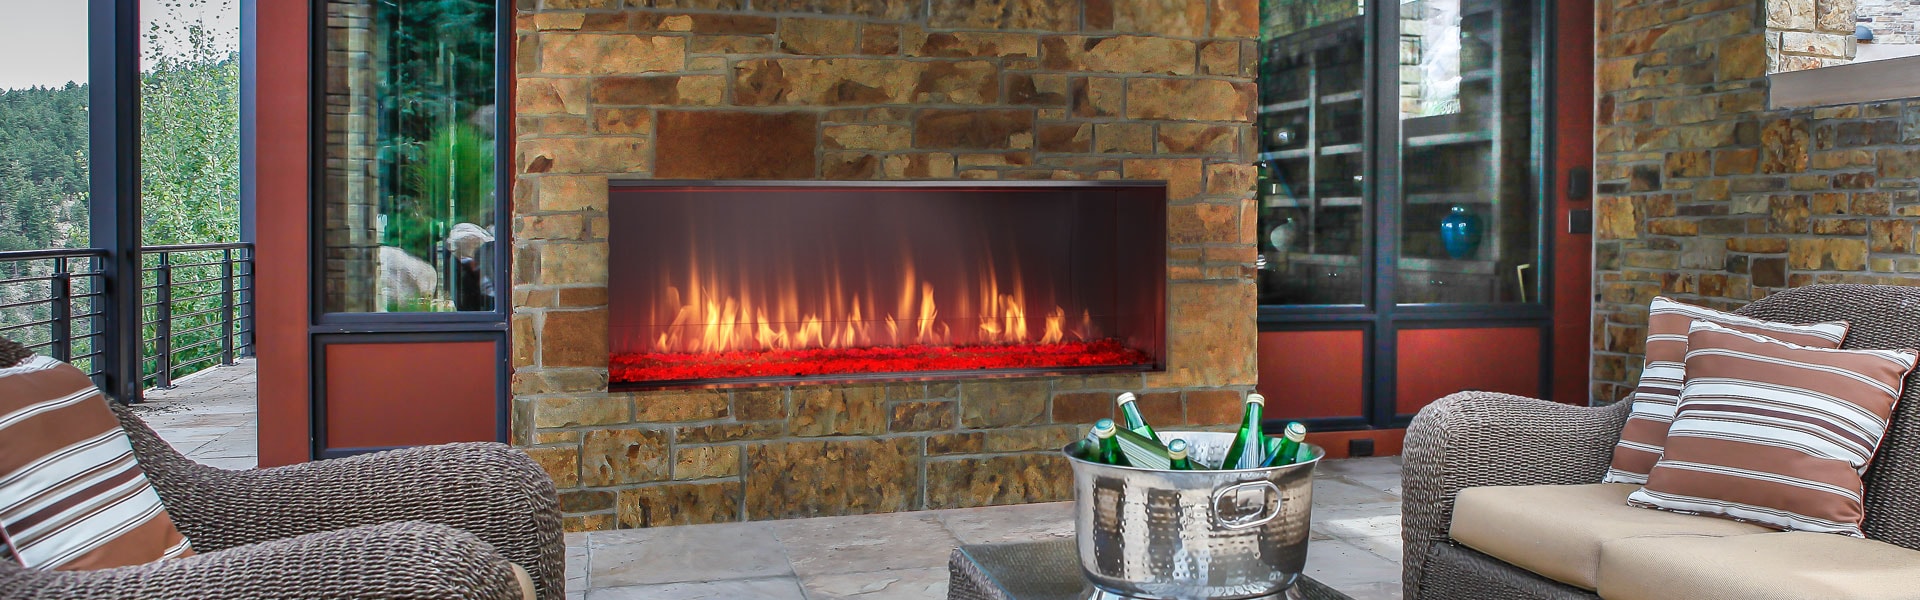 Heatilator Fireplace Manual Unique Lanai Gas Fireplace